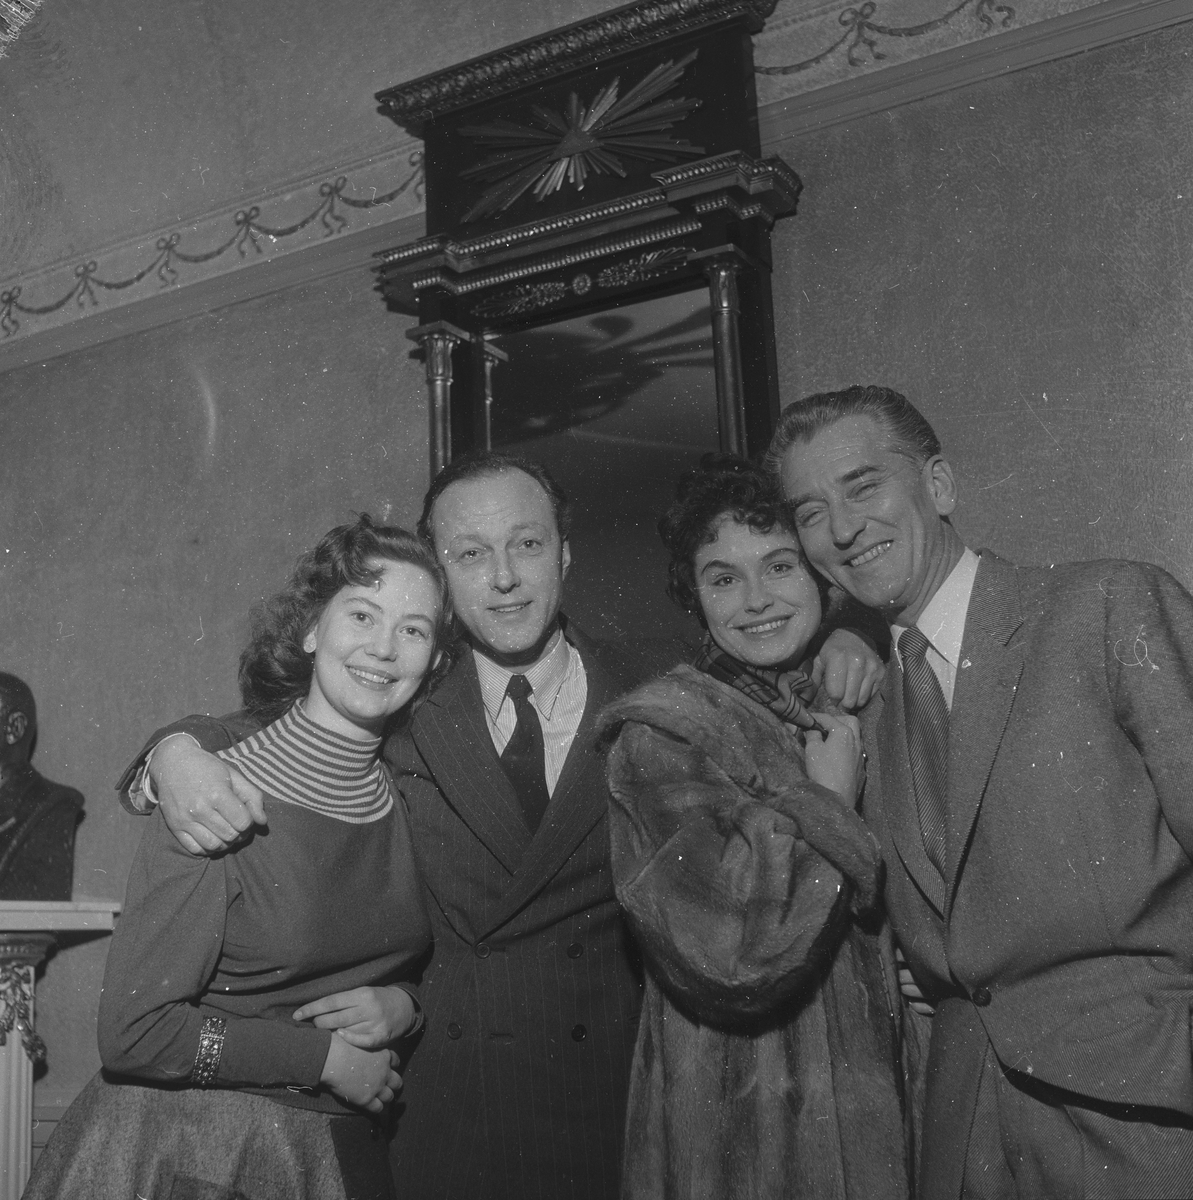 Fra oppsetningen av "Call me Madam". Fra venstre Anne-Lise Tangstad, Frank Robert, Ingerid Vardun og Lauritz Falk.  Fotografert 10. april 1959.